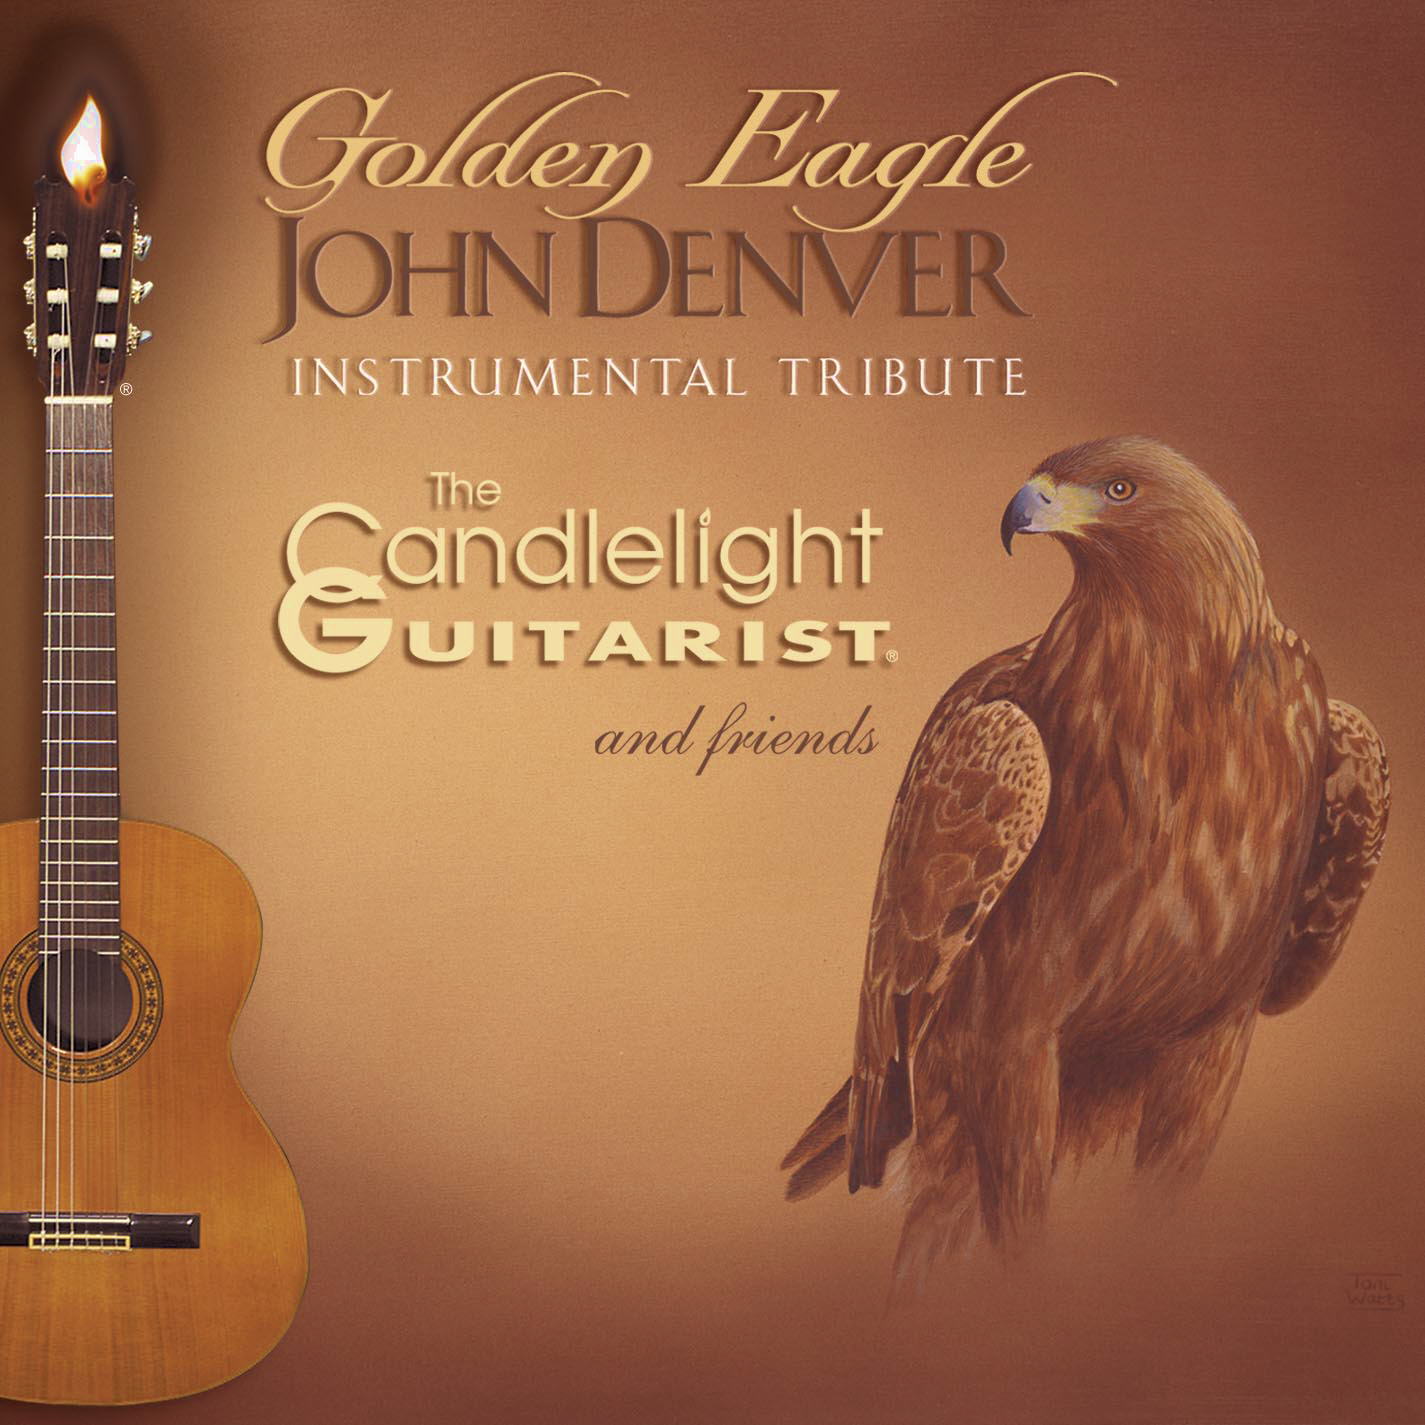 Golden Eagle - John Denver Instrumental Tribute CD cover